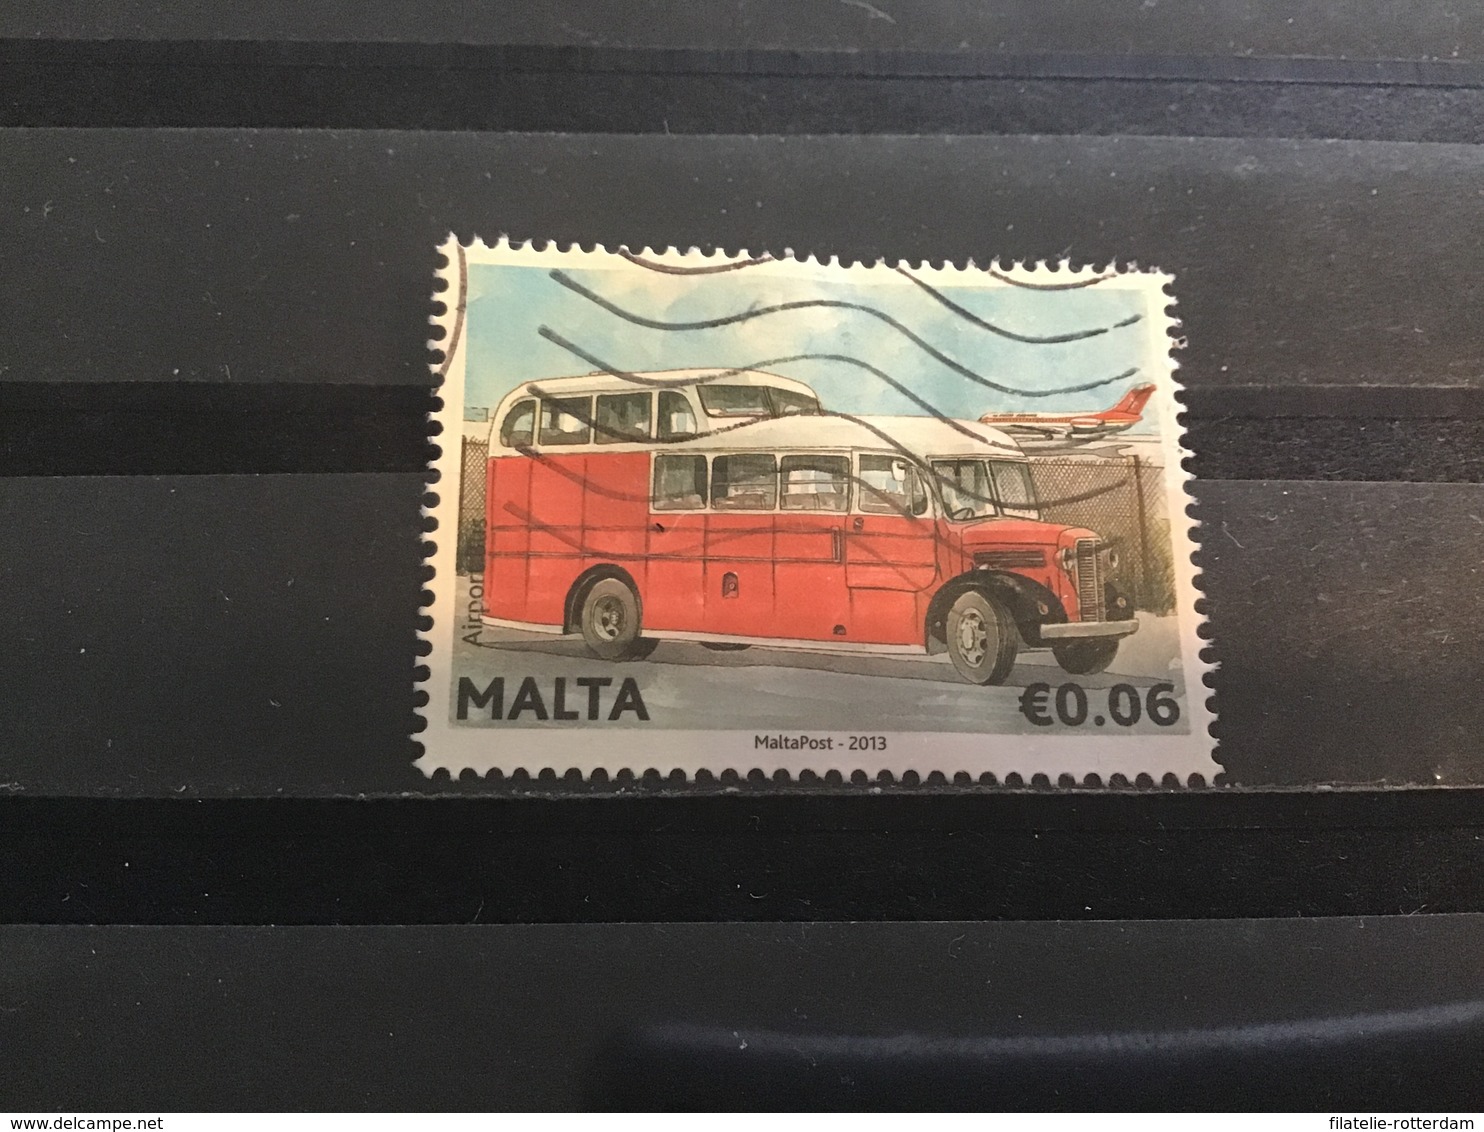 Malta / Malte - Historische Bussen (0.06) 2013 - Malta